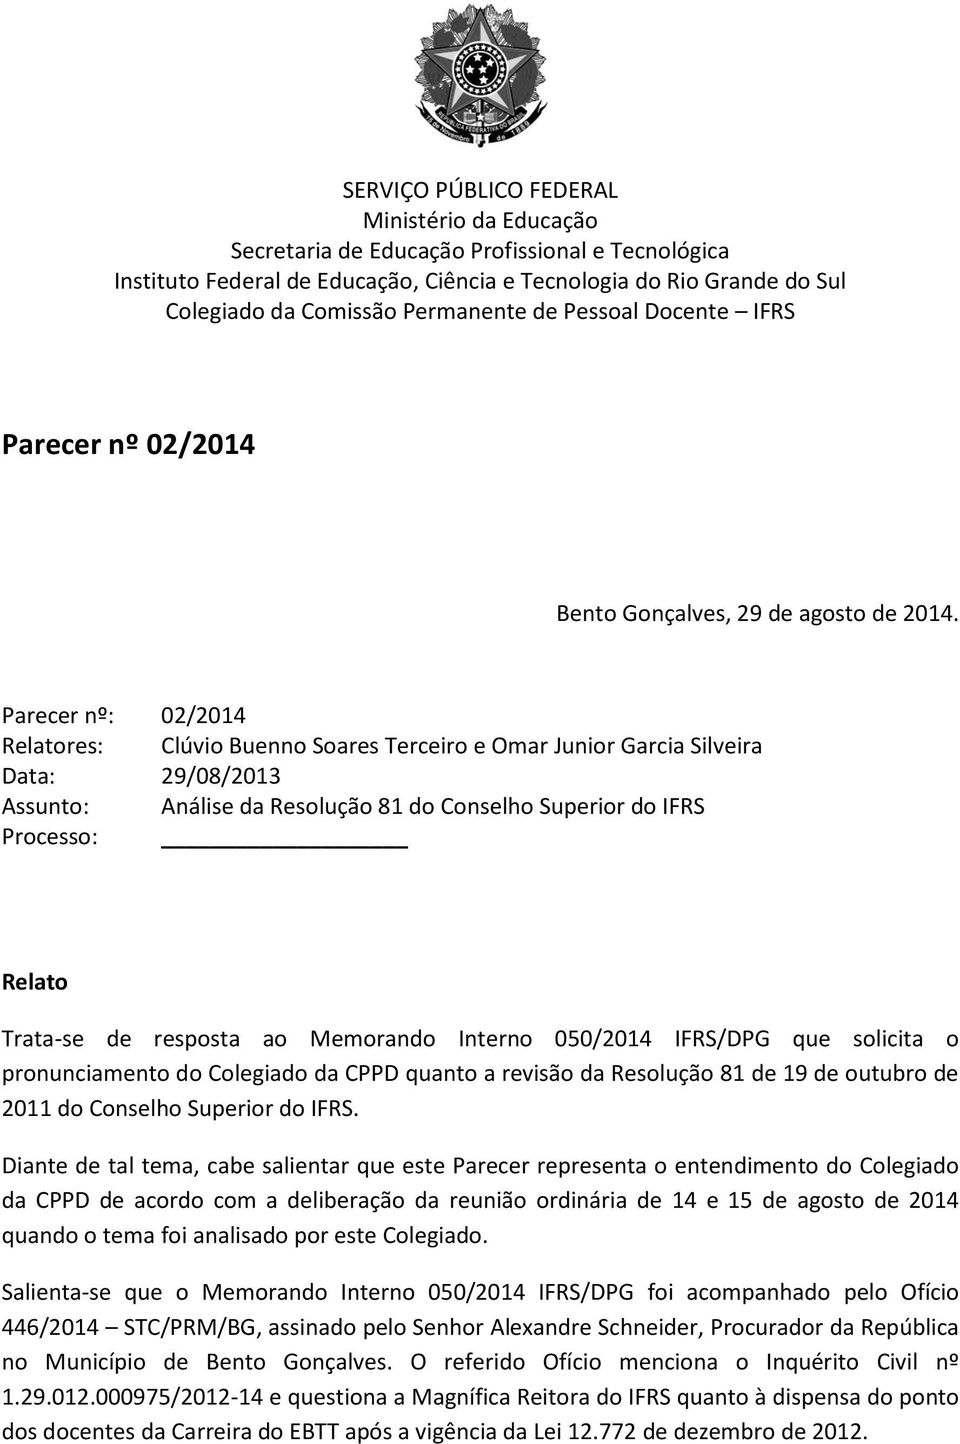 Parecer nº: 02/2014 Relatores: Clúvio Buenno Soares Terceiro e Omar Junior Garcia Silveira Data: 29/08/2013 Assunto: Análise da Resolução 81 do Conselho Superior do IFRS Processo: Relato Trata-se de